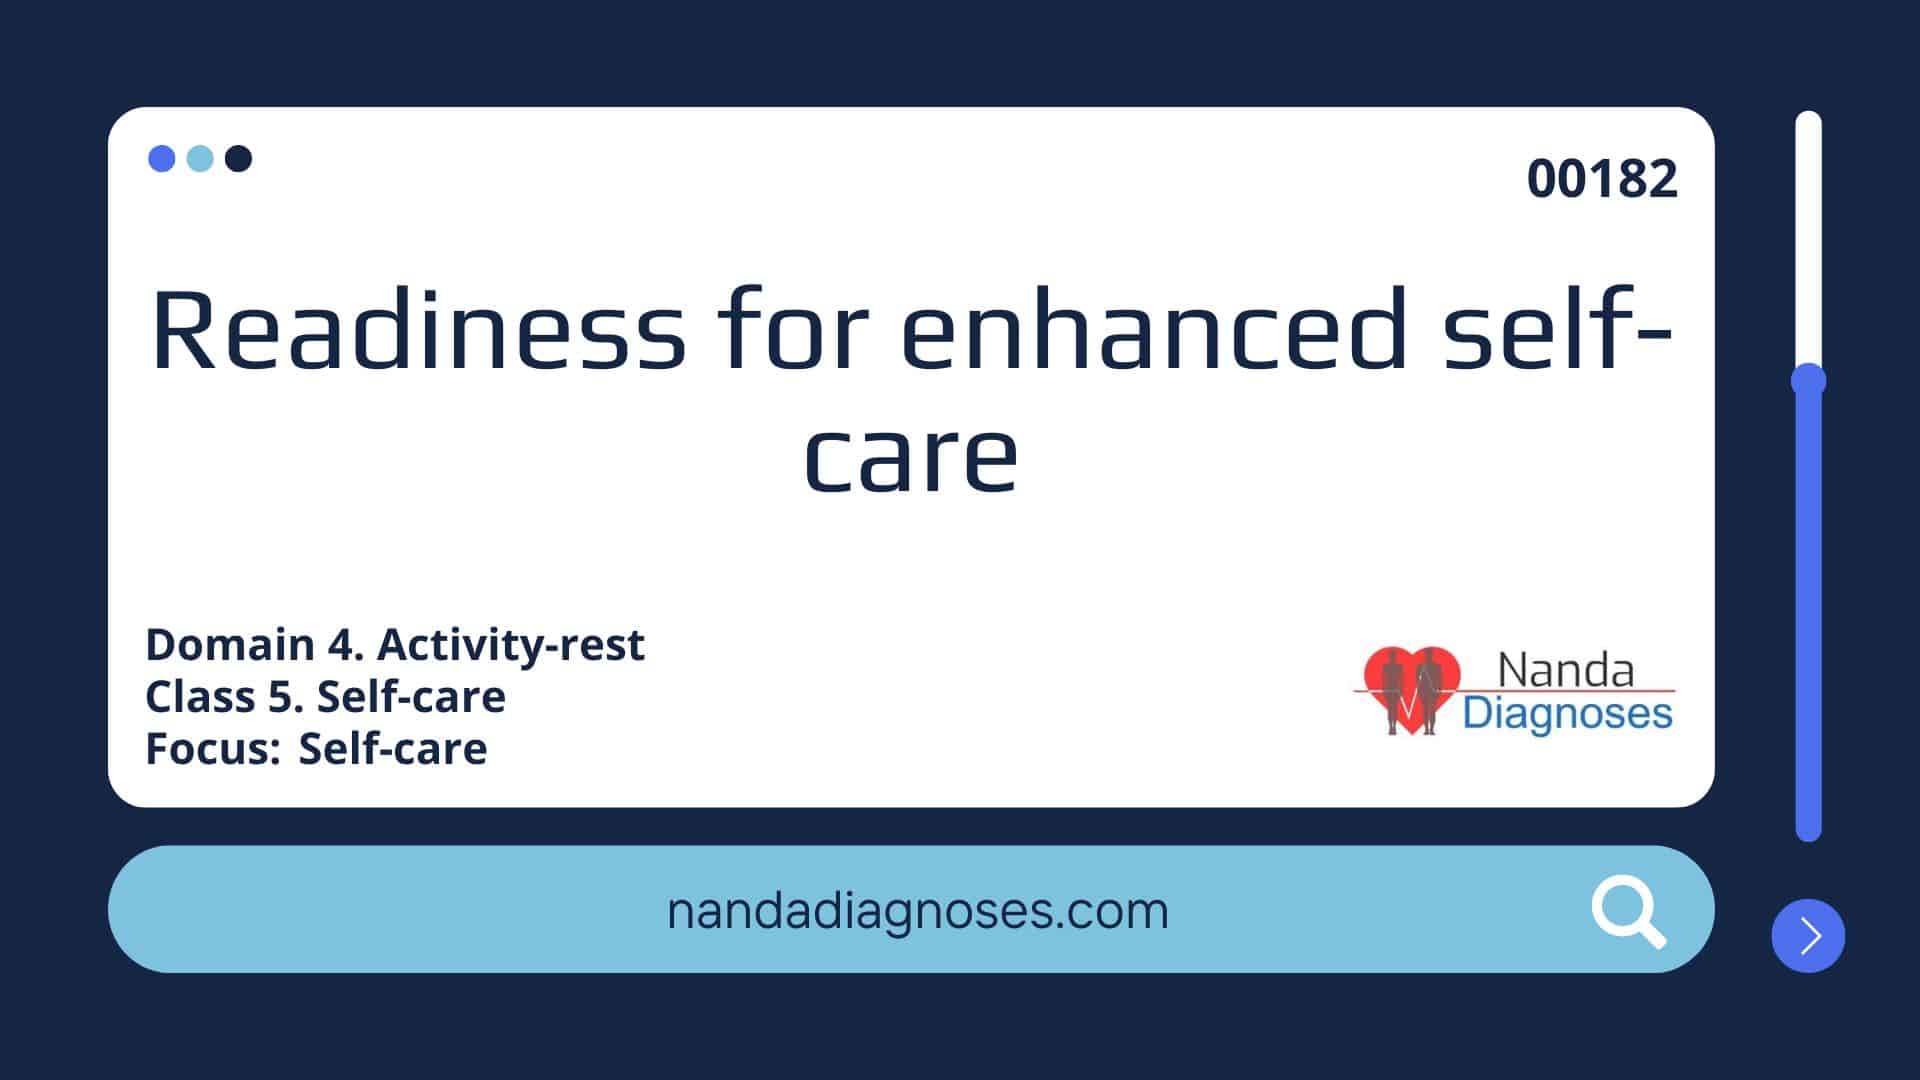 Nursing diagnosis Readiness for enhanced self care